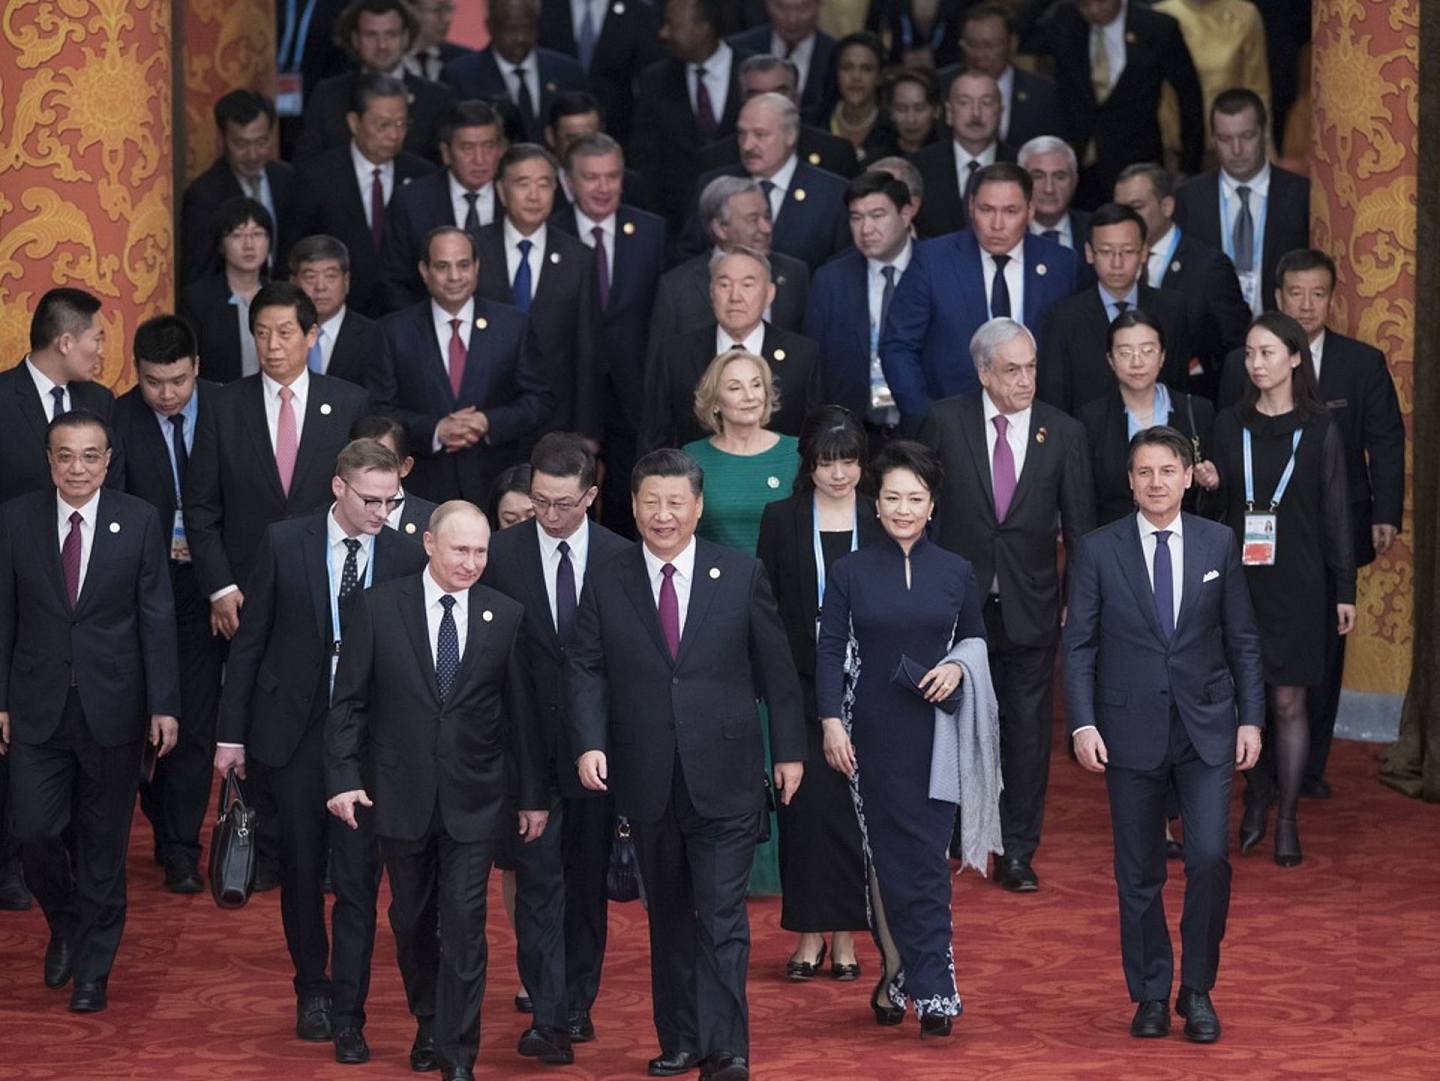 “一带一路”是由中国在2013年发起的一项倡议，旨在加强中国贸易路径沿线国家的基础设施建设，打造更为高效的贸易区域网络。图为2019年4月26日，中国国家主席习近平和夫人彭丽媛在北京人民大会堂举行宴会，欢迎出席第二届“一带一路”国际合作高峰论坛的外方领导人夫妇及嘉宾。（新华社）